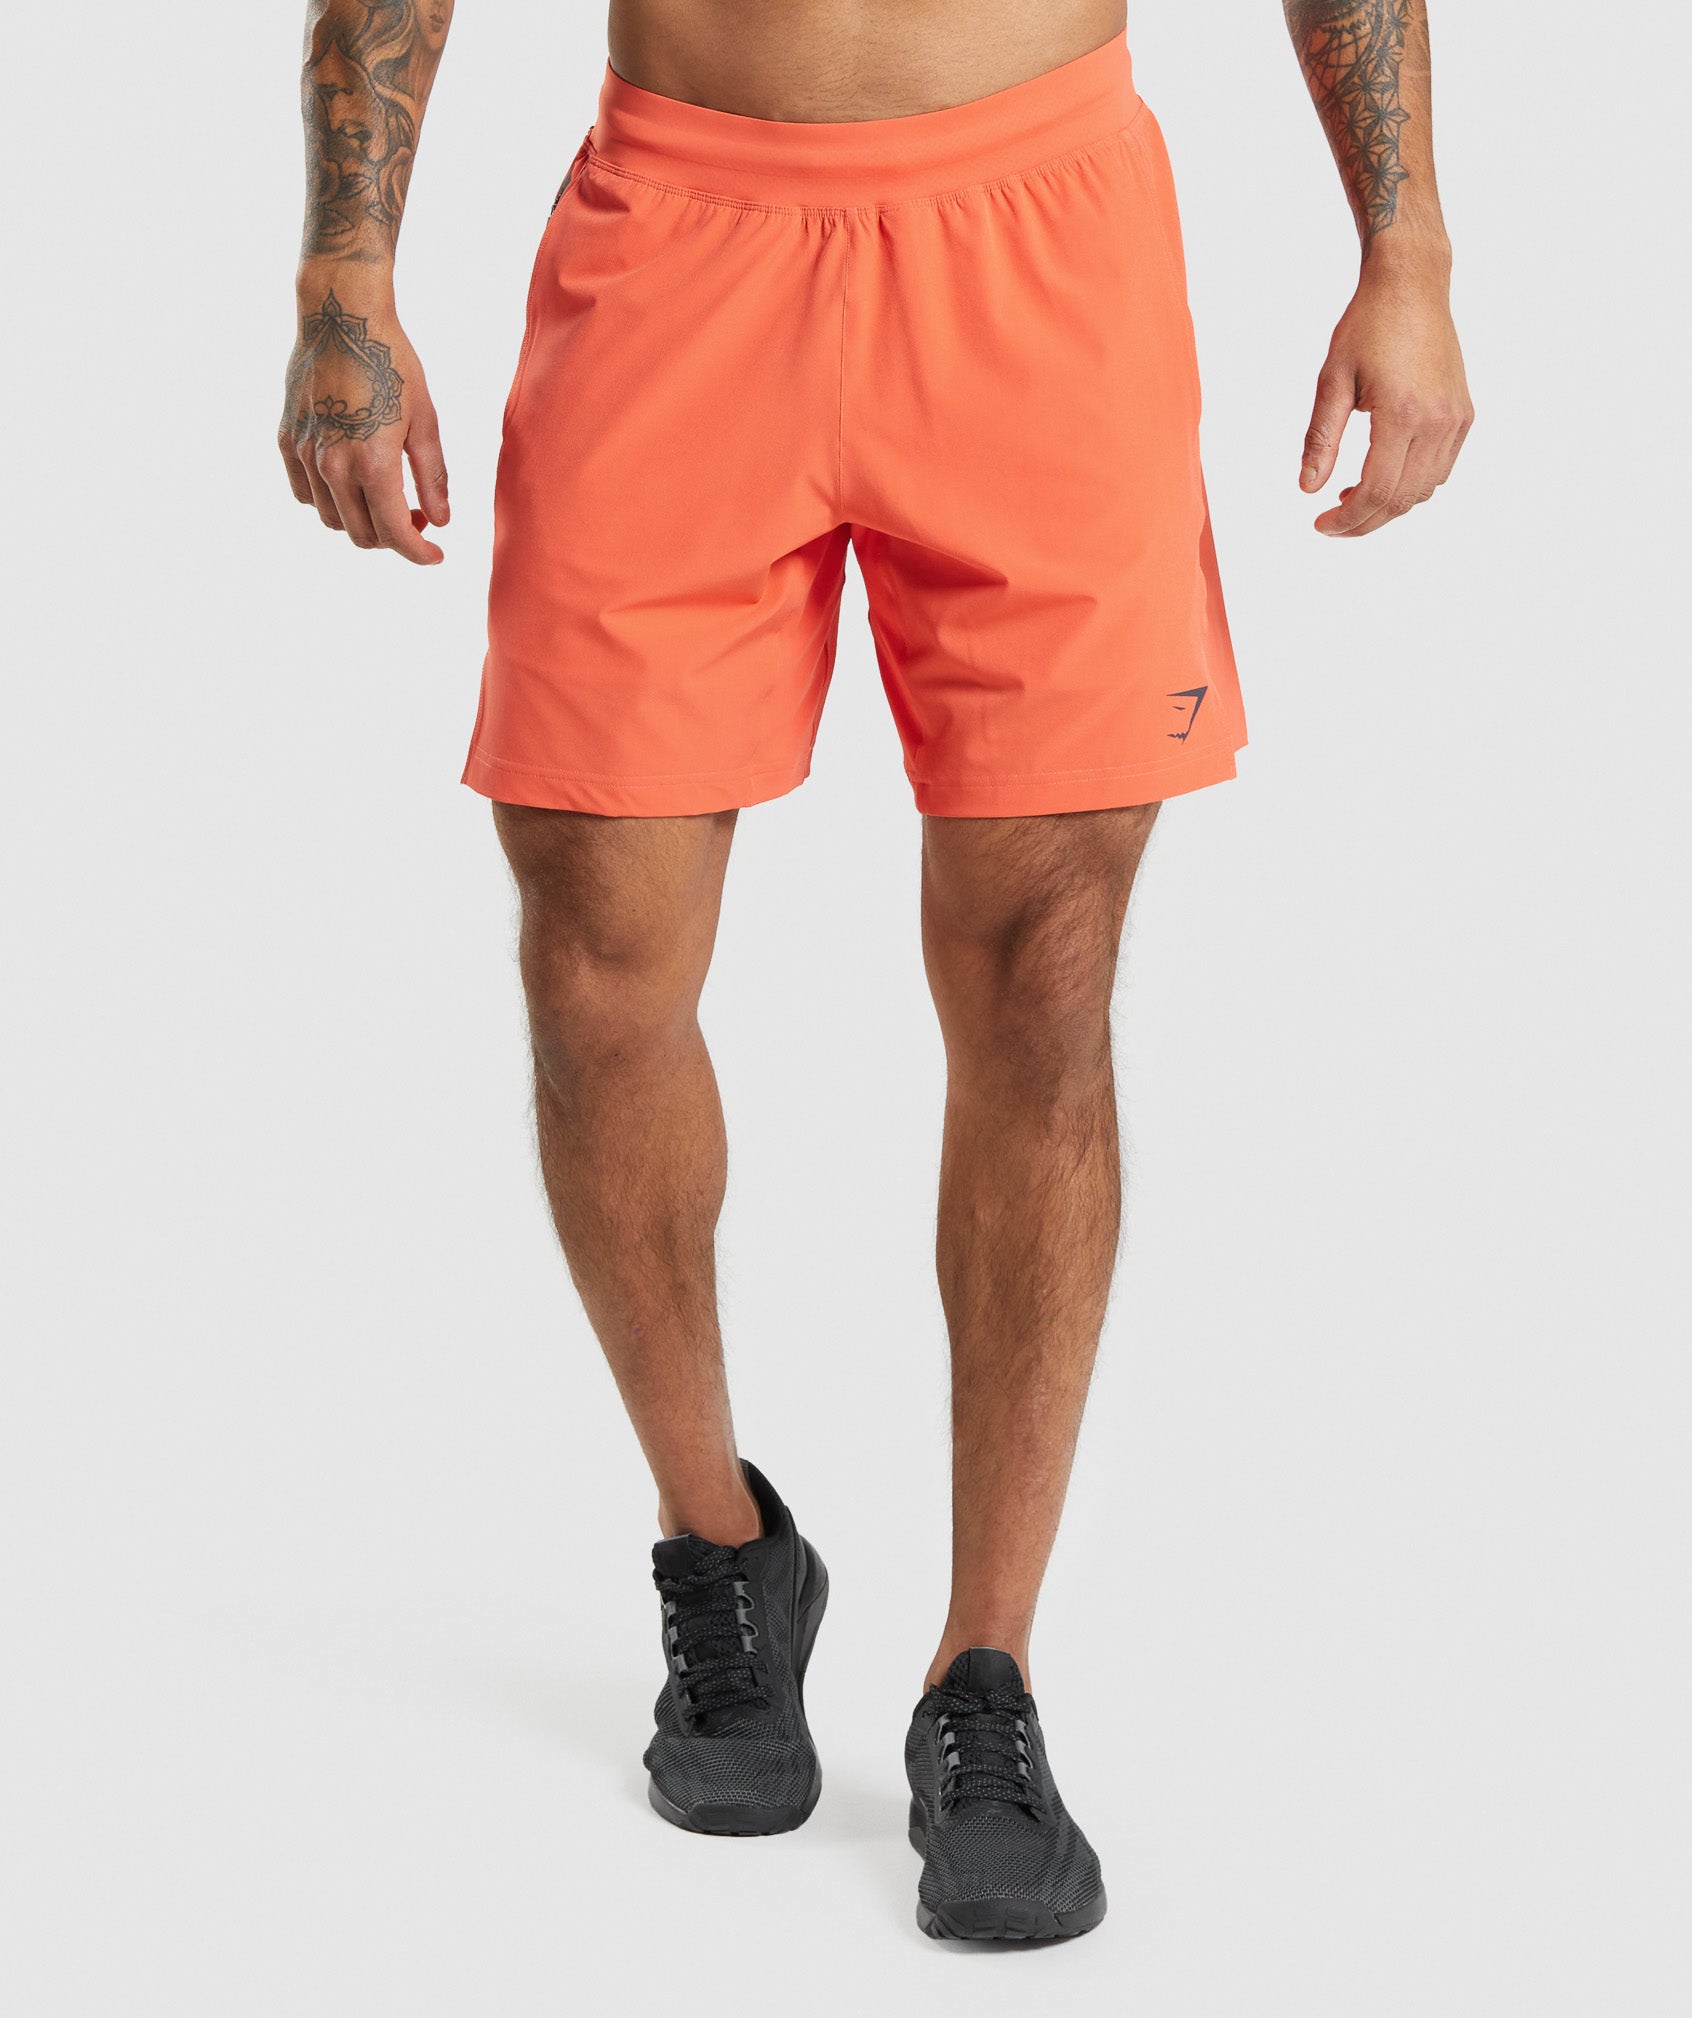 Apex 8" Function Shorts in Papaya Orange - view 1